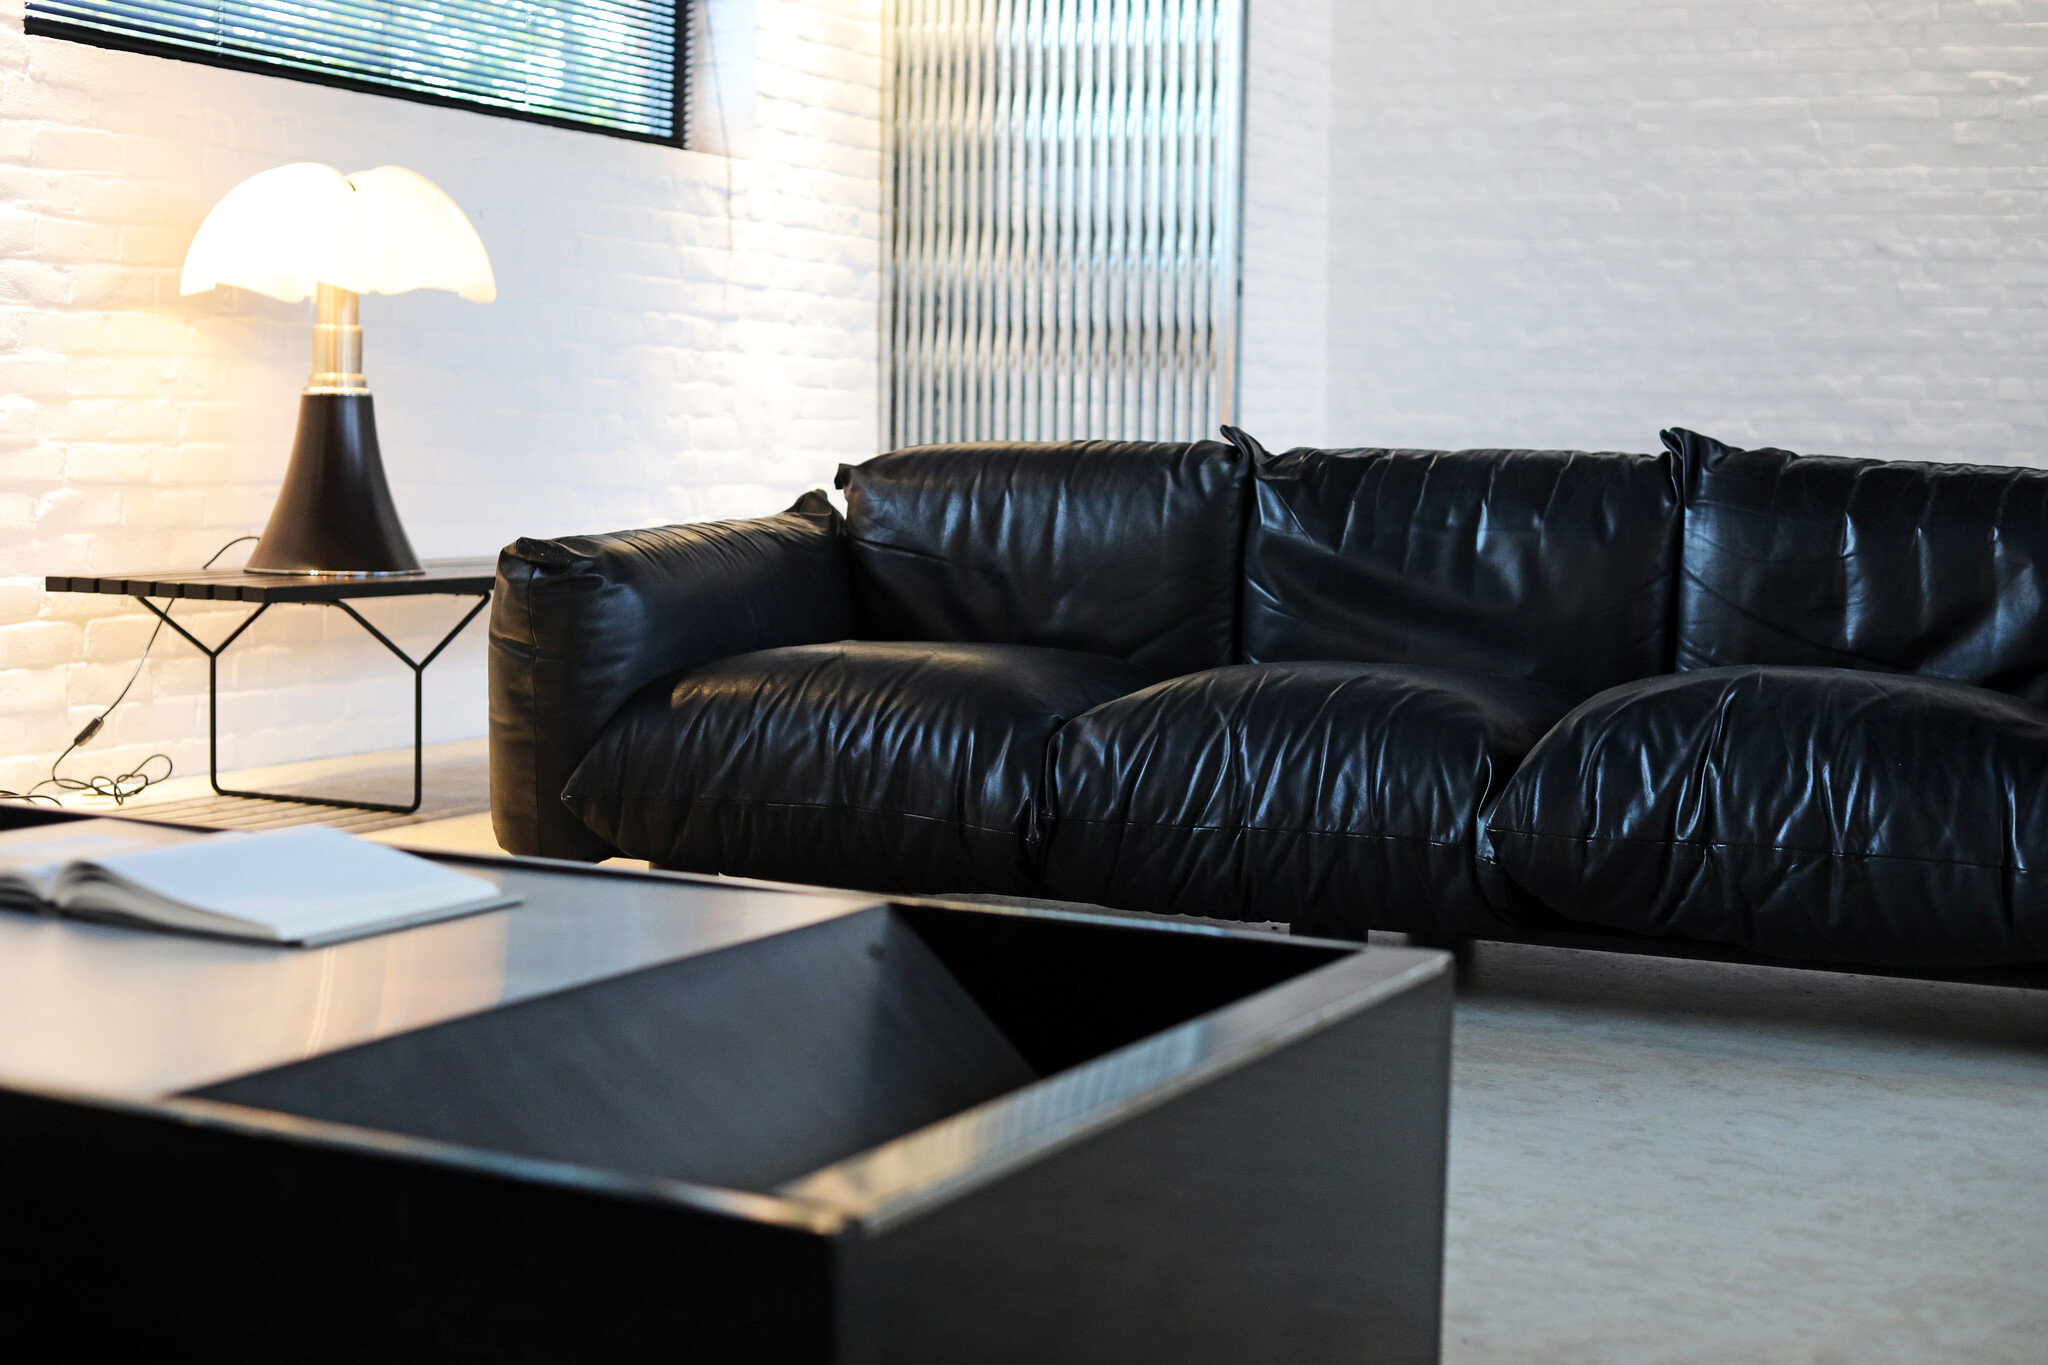 Marenco Sofa designed by Mario Marenco for Arflex